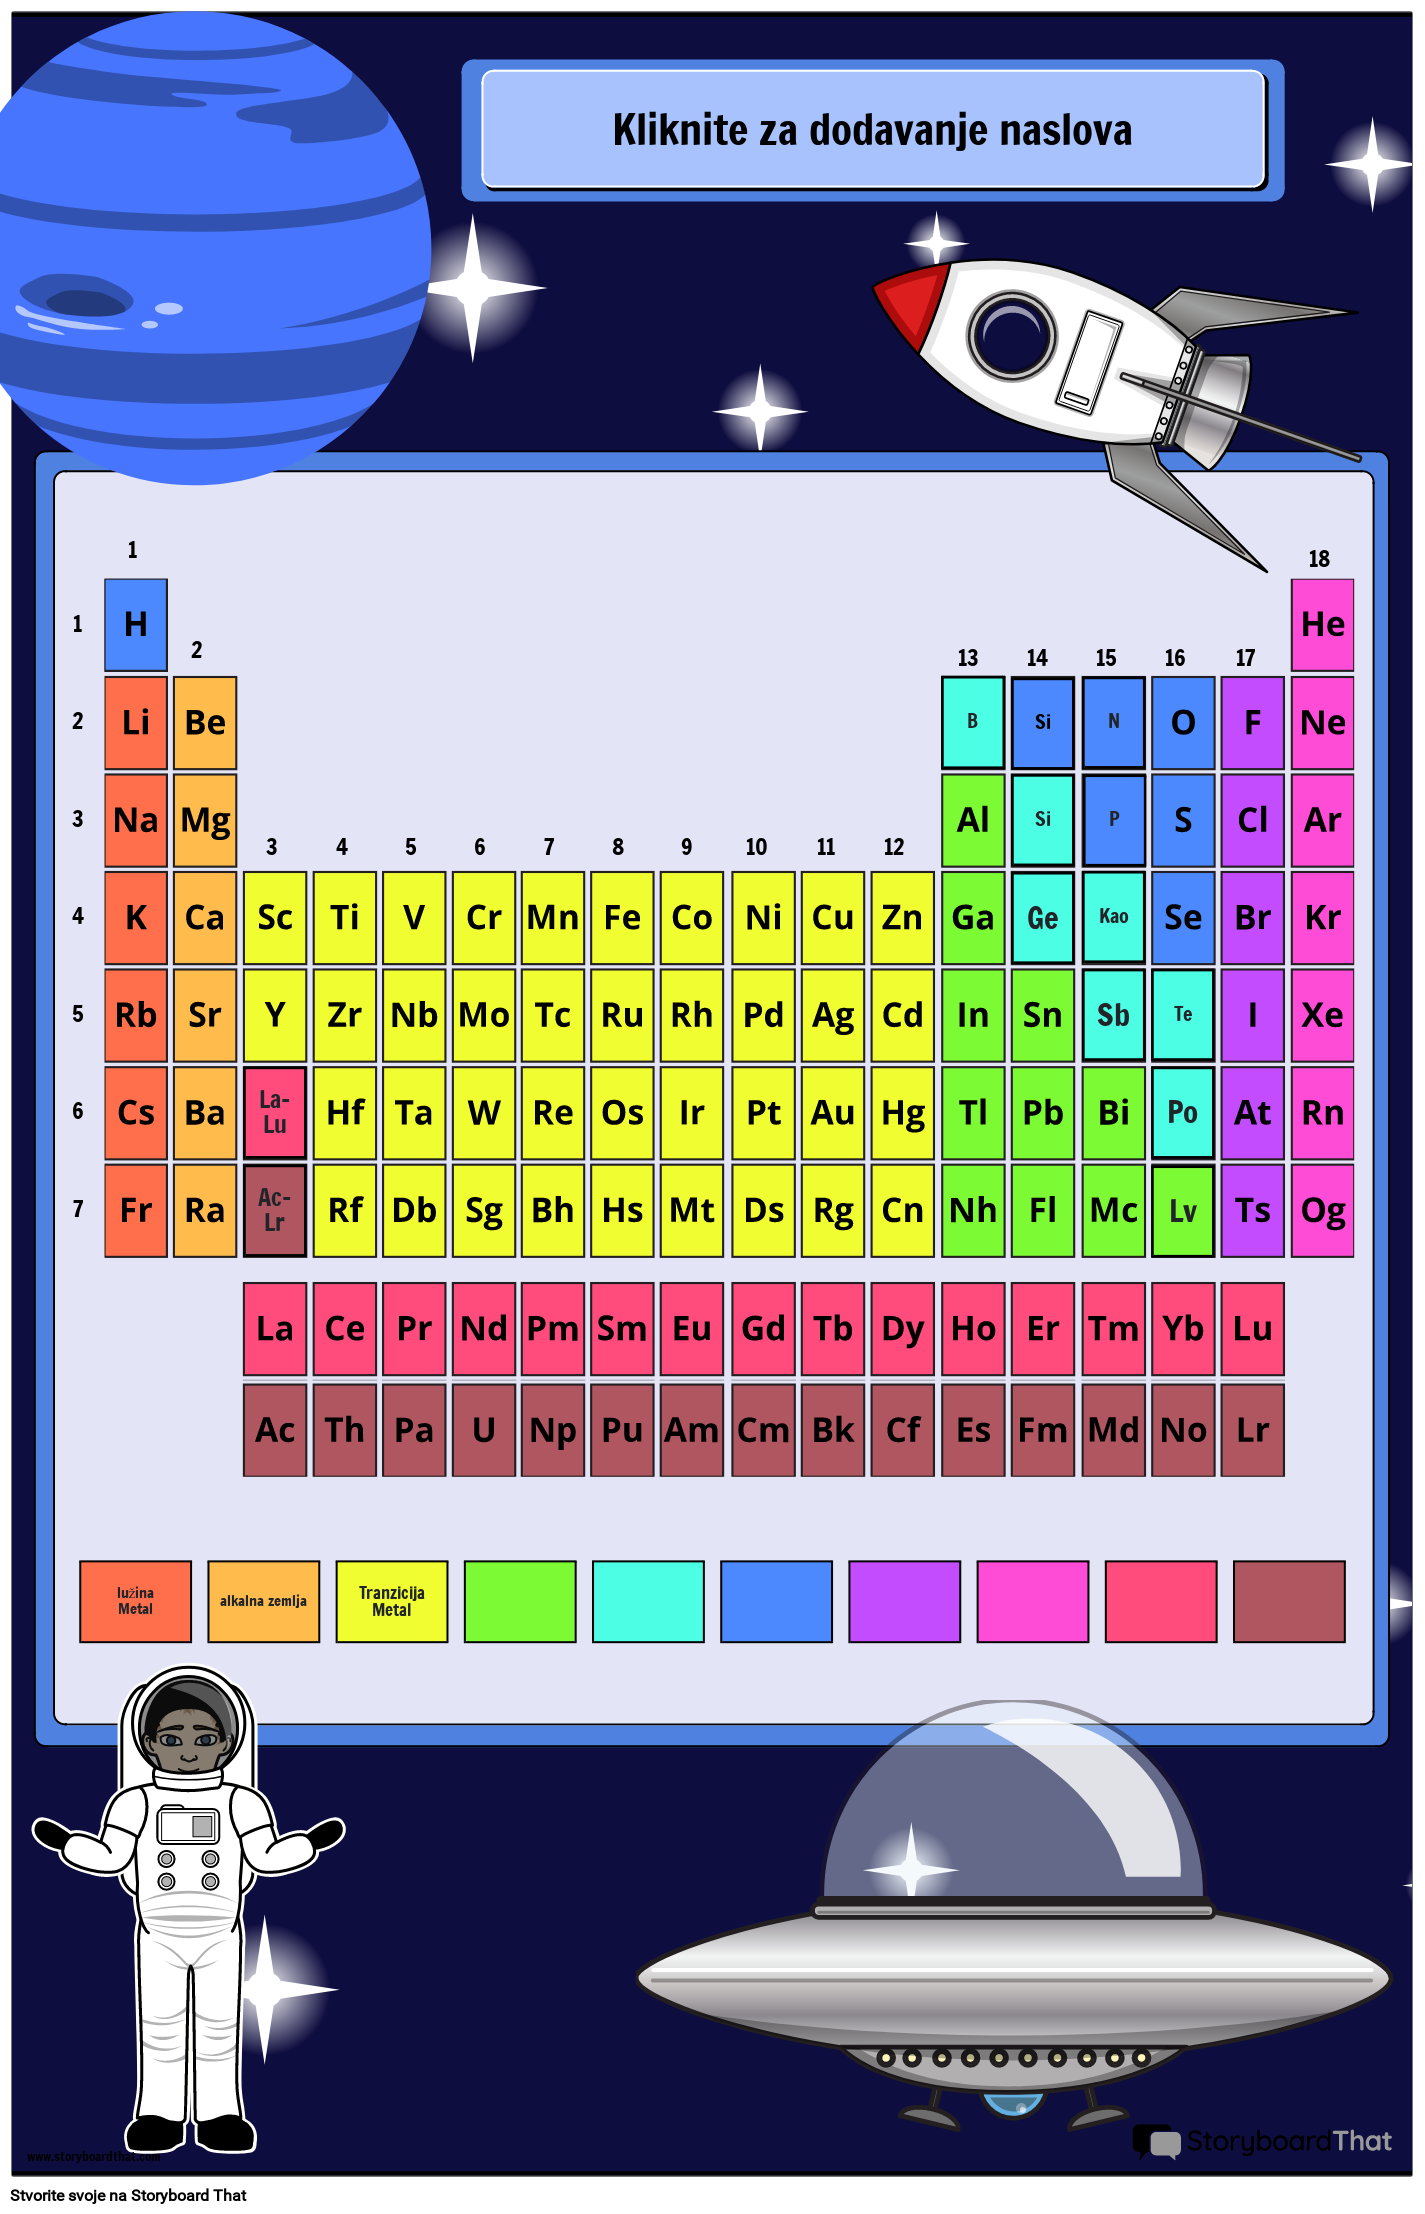 Svemirska Tema - Poster s Periodnim Sustavom Elemenata